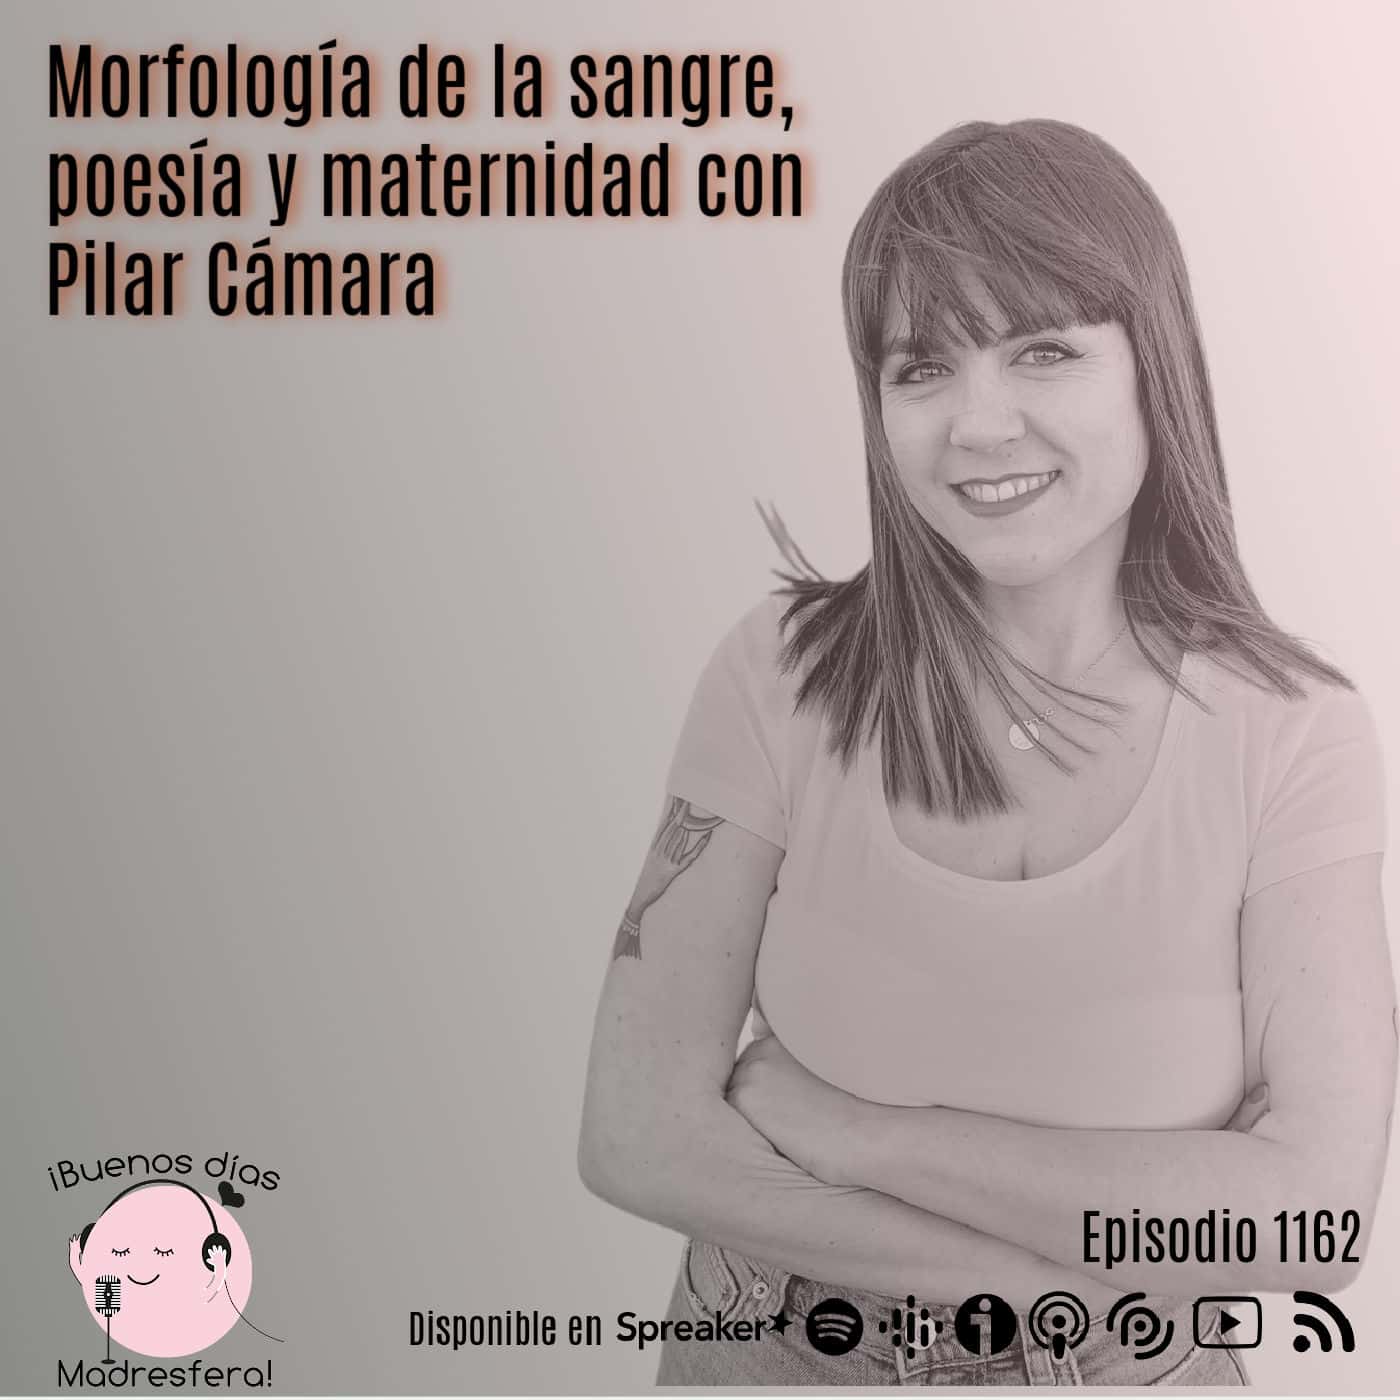 Morfología de la sangre, poesía y maternidad con Pilar Cámara @pilar_cgarcia